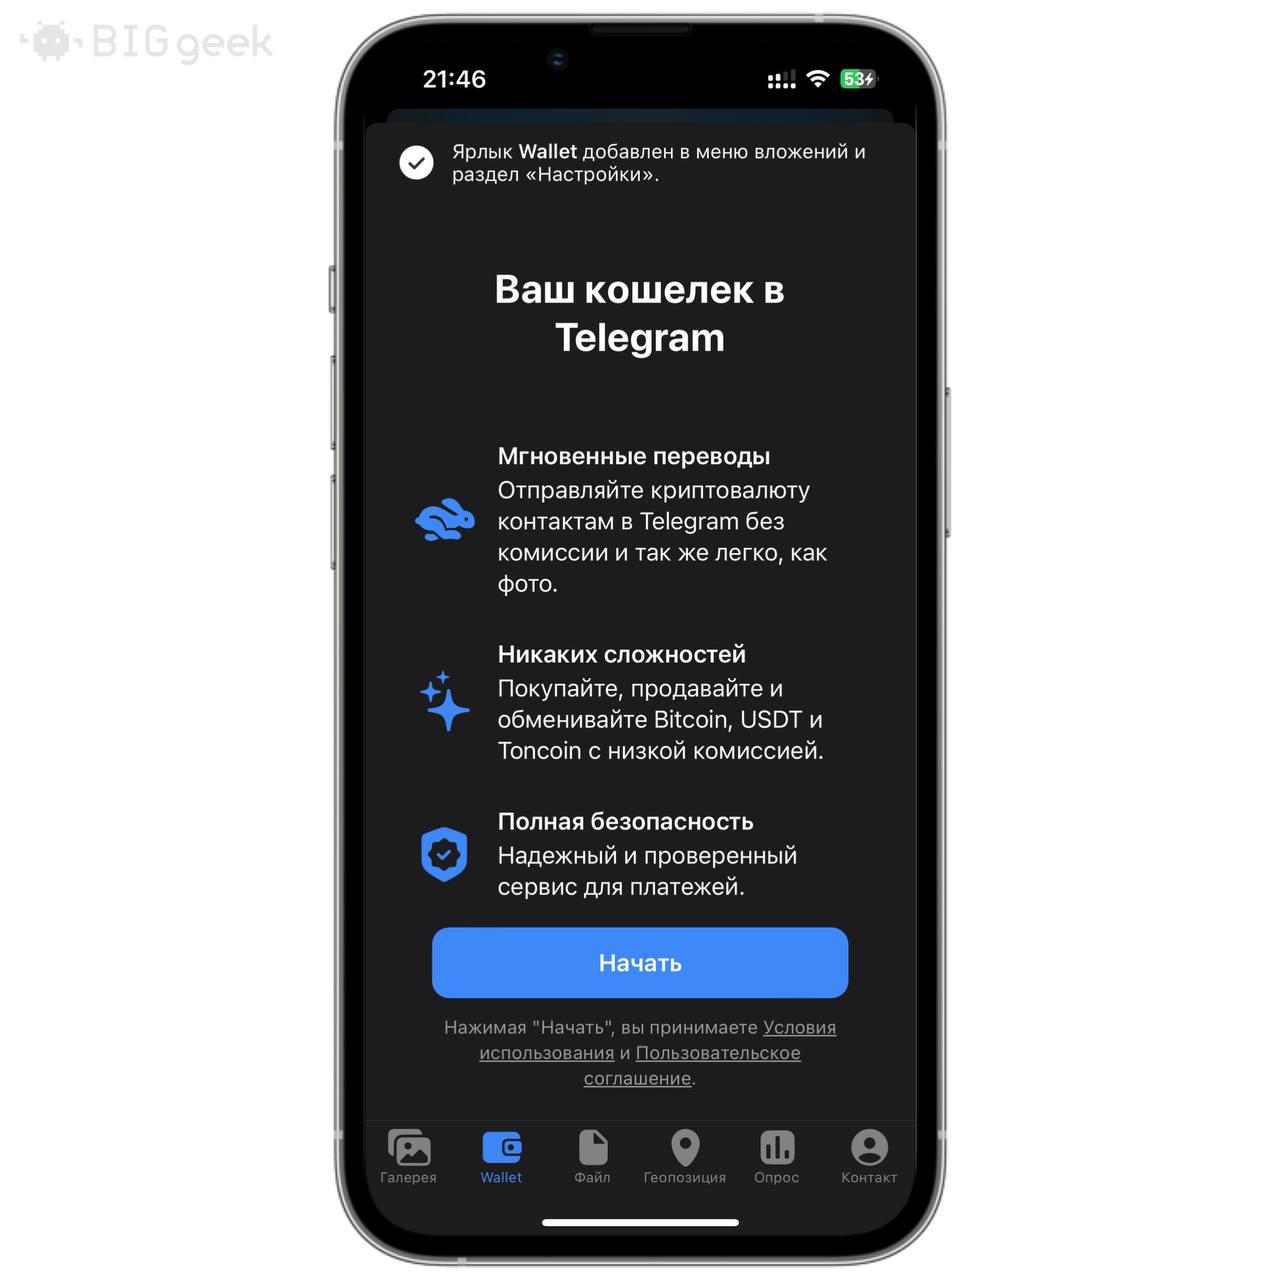 Обновить телеграмм на телефоне бесплатно без регистрации на русском языке андроид фото 102